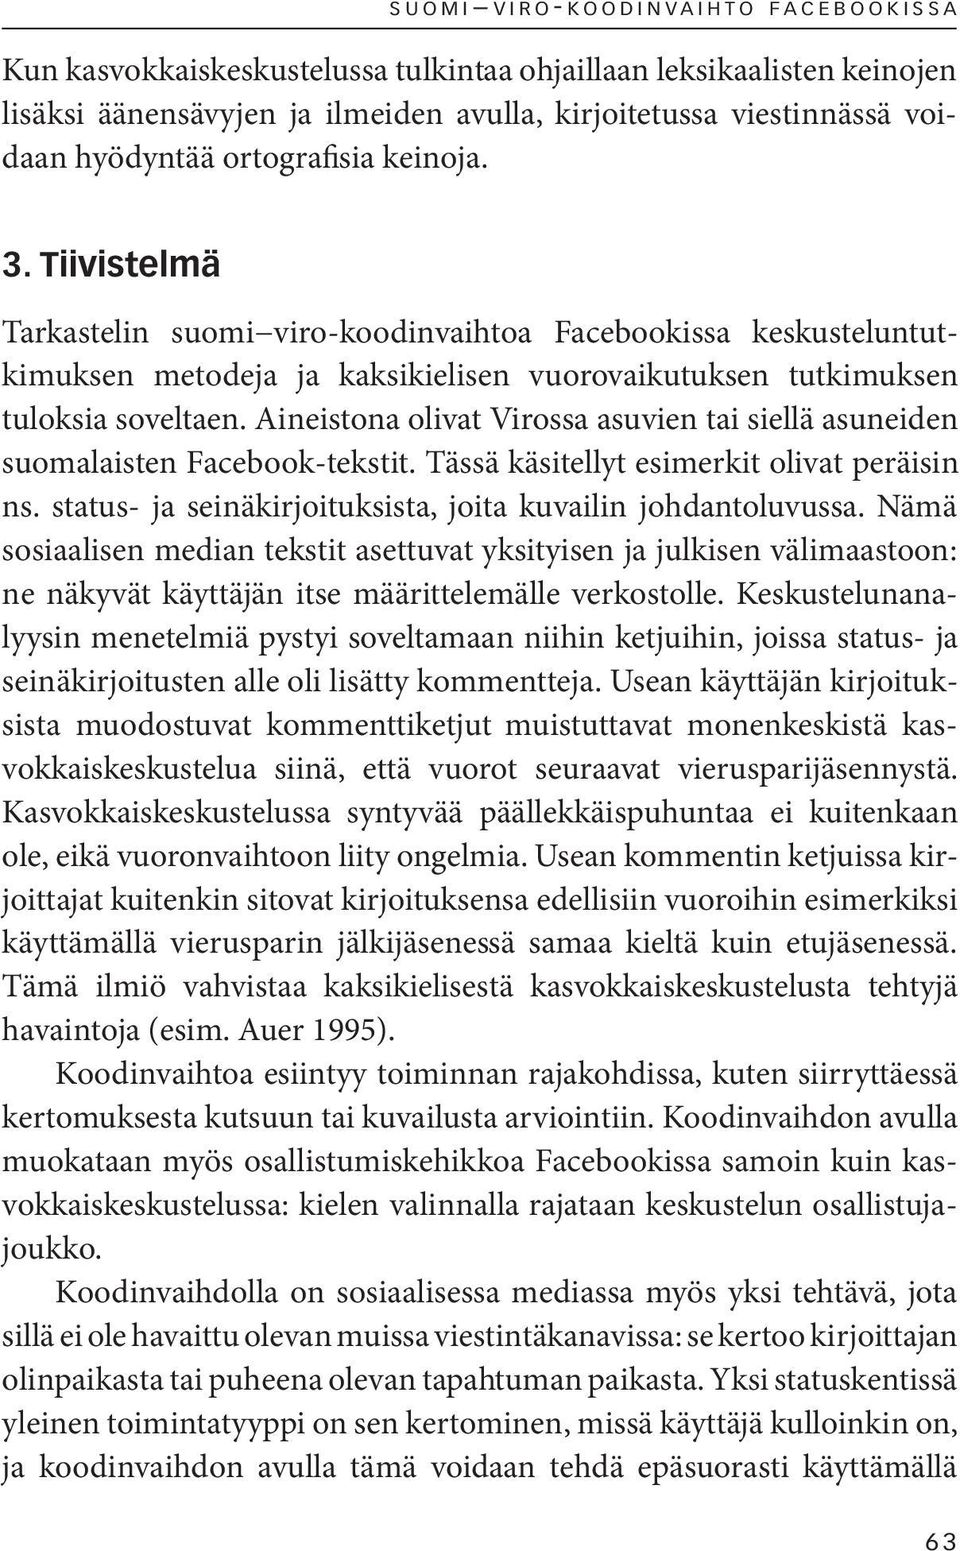 Tiivistelmä Tarkastelin suomi viro-koodinvaihtoa Facebookissa keskusteluntutkimuksen metodeja ja kaksikielisen vuorovaikutuksen tutkimuksen tuloksia soveltaen.